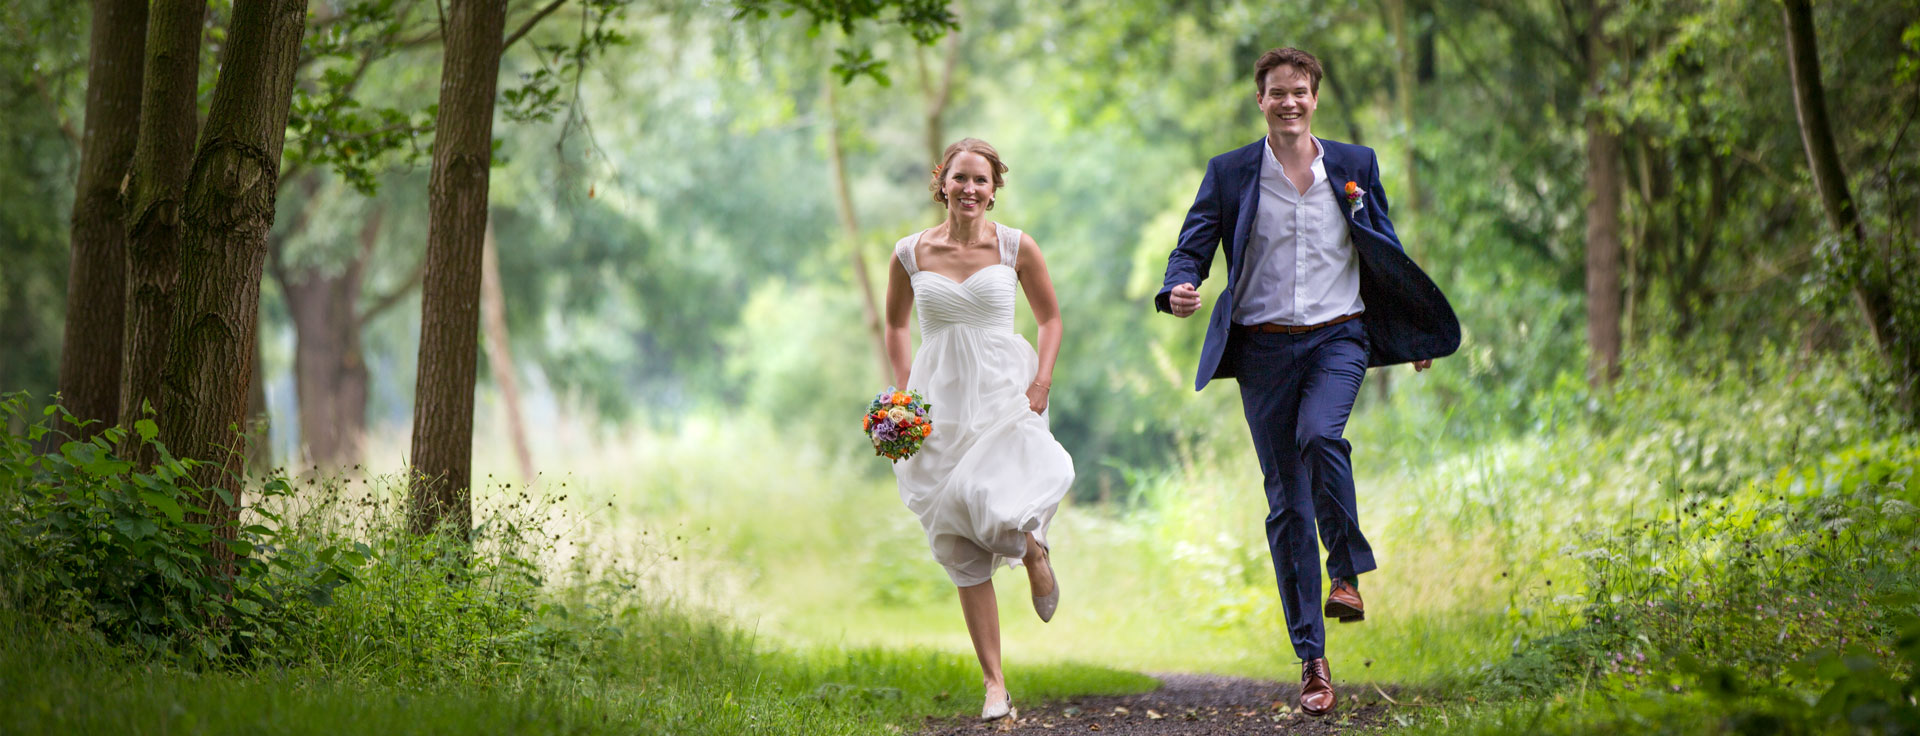 Glückliches Brautpaar im Wald. Hochzeits-Fotoshooting im Wald.